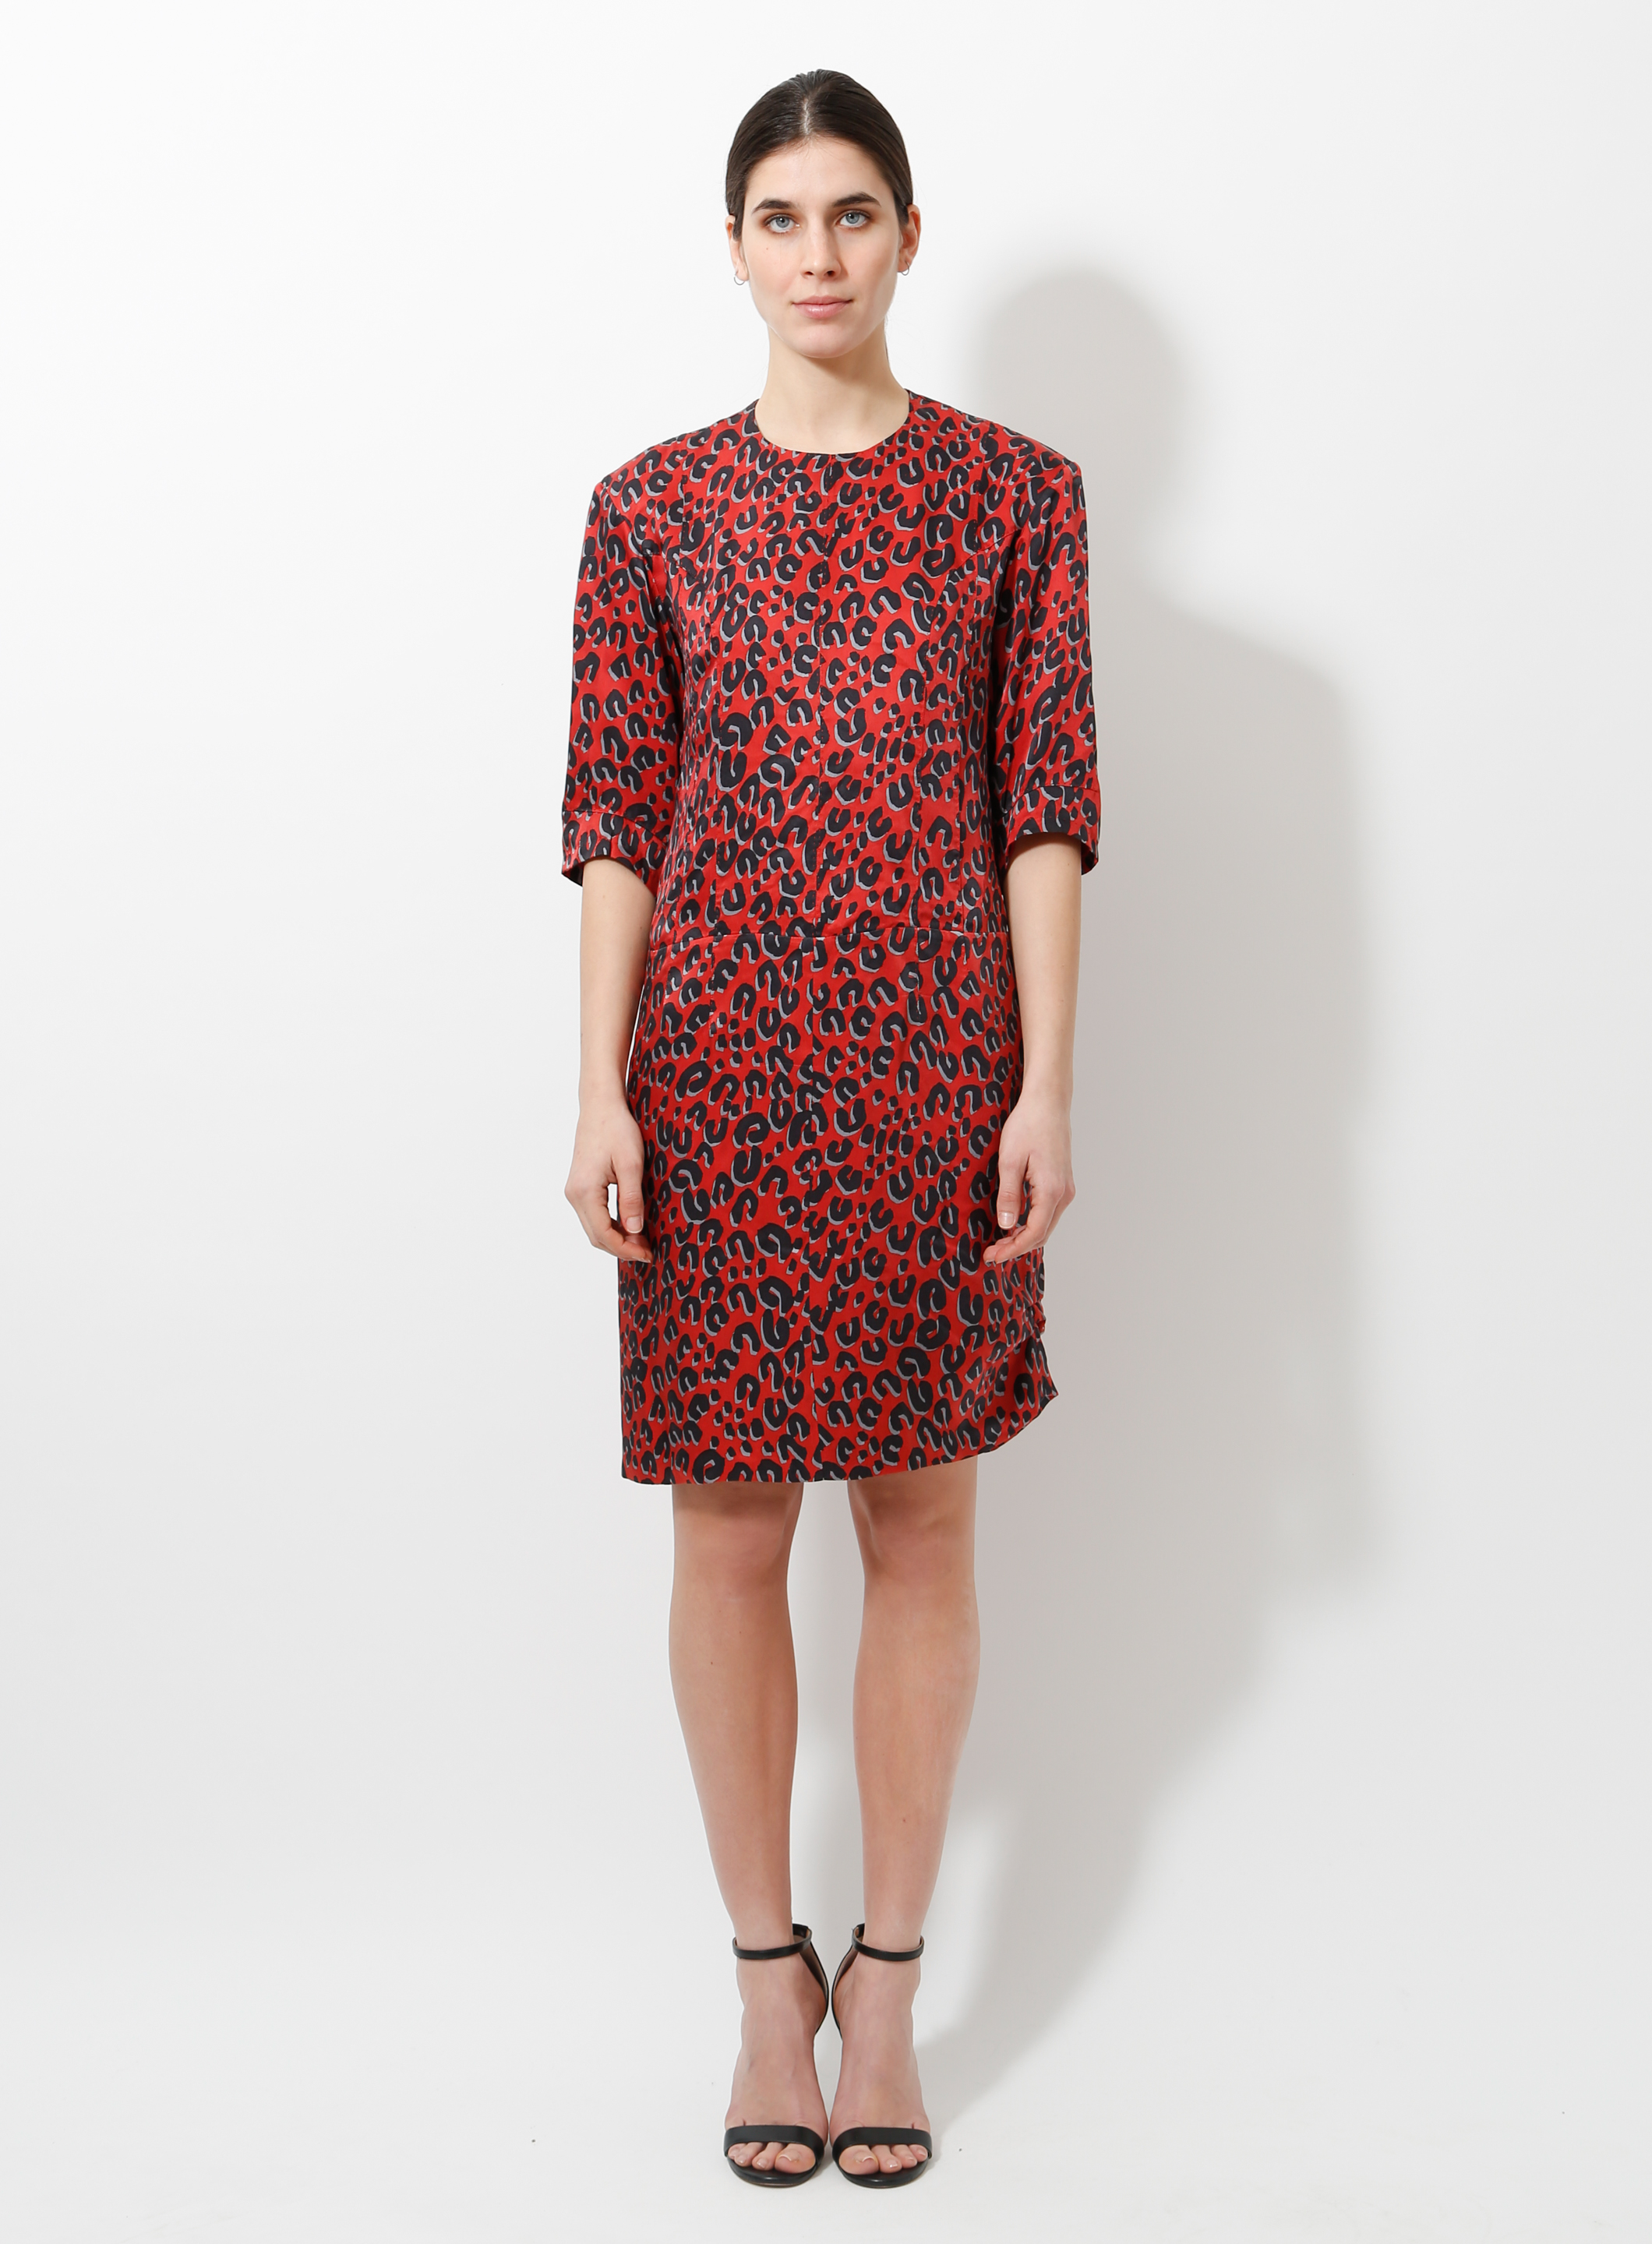 Louis Vuitton, Dresses, Louis Vuitton Stephen Sprouse Dress 38 Us 6 Dress  Leopard Animal Print W Belt